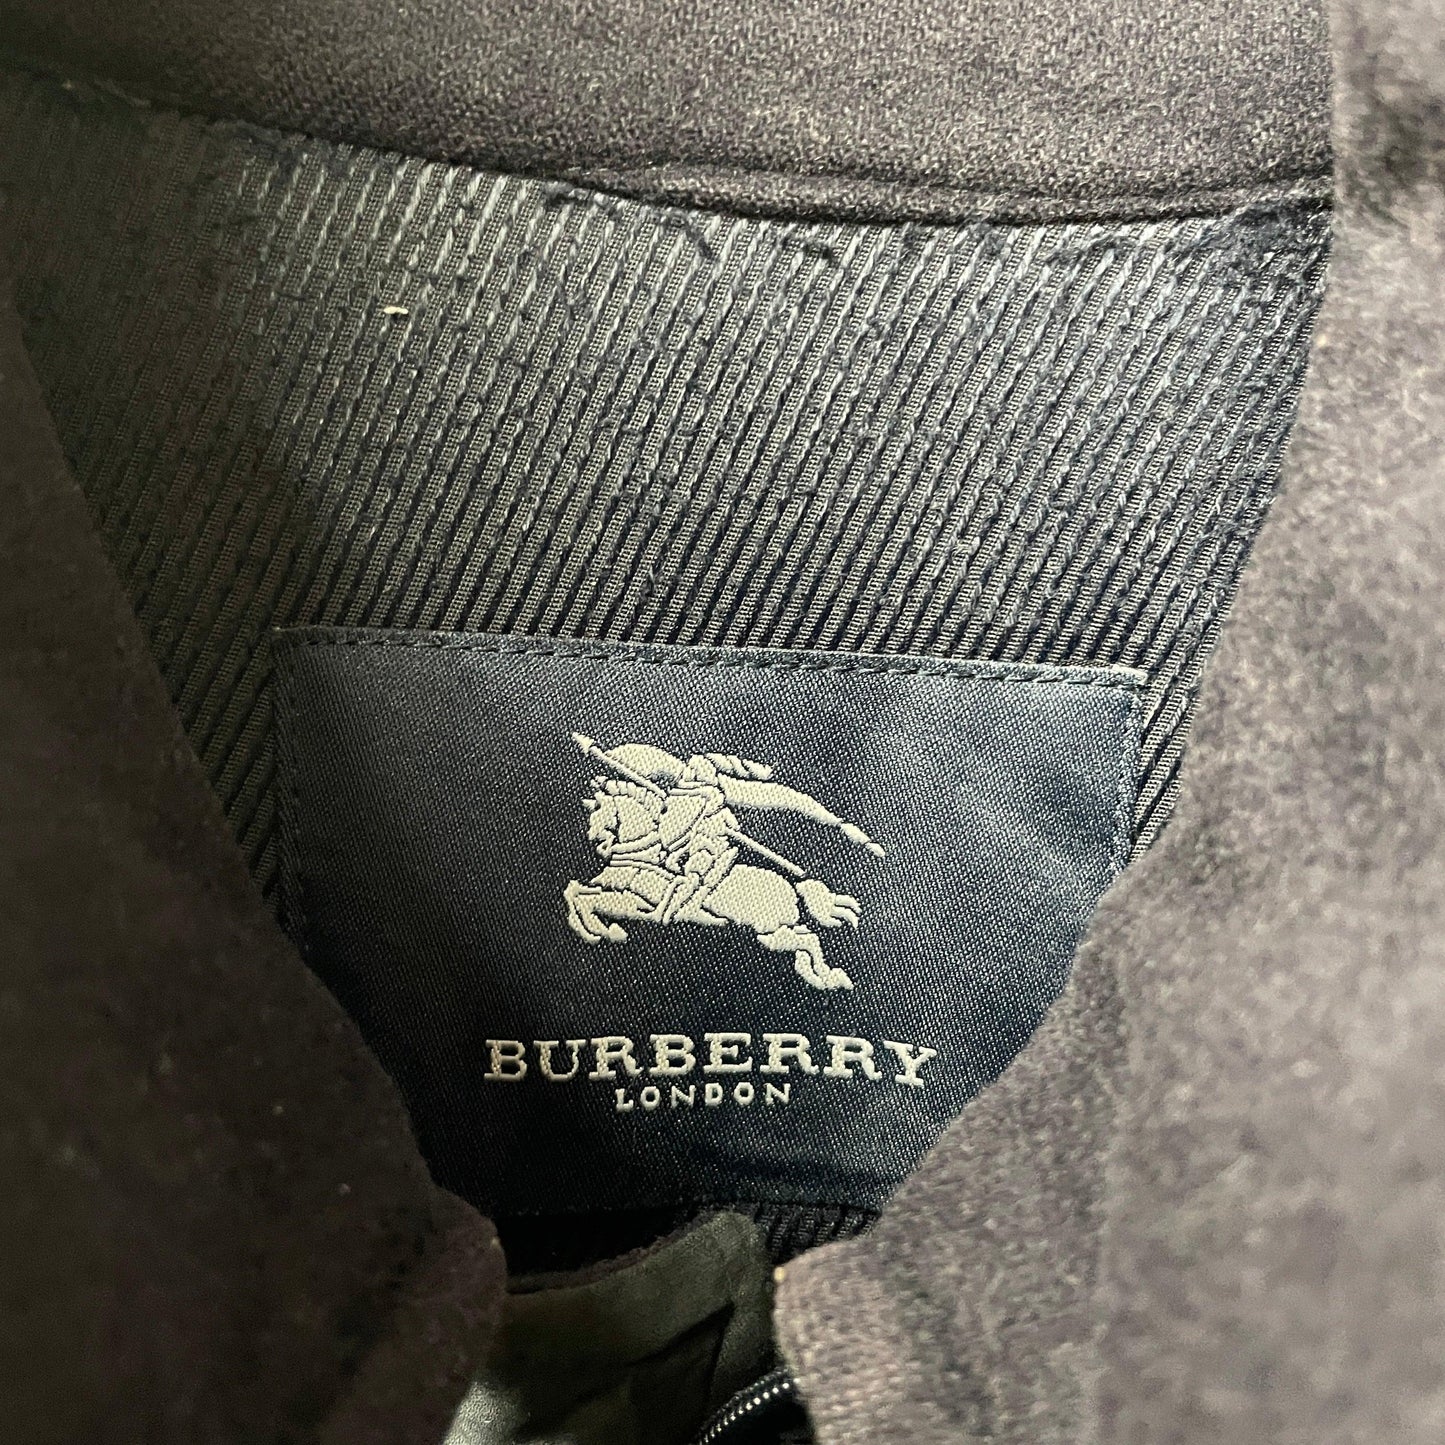 Burberrys jacket Burberry jacket Hamilton jacket